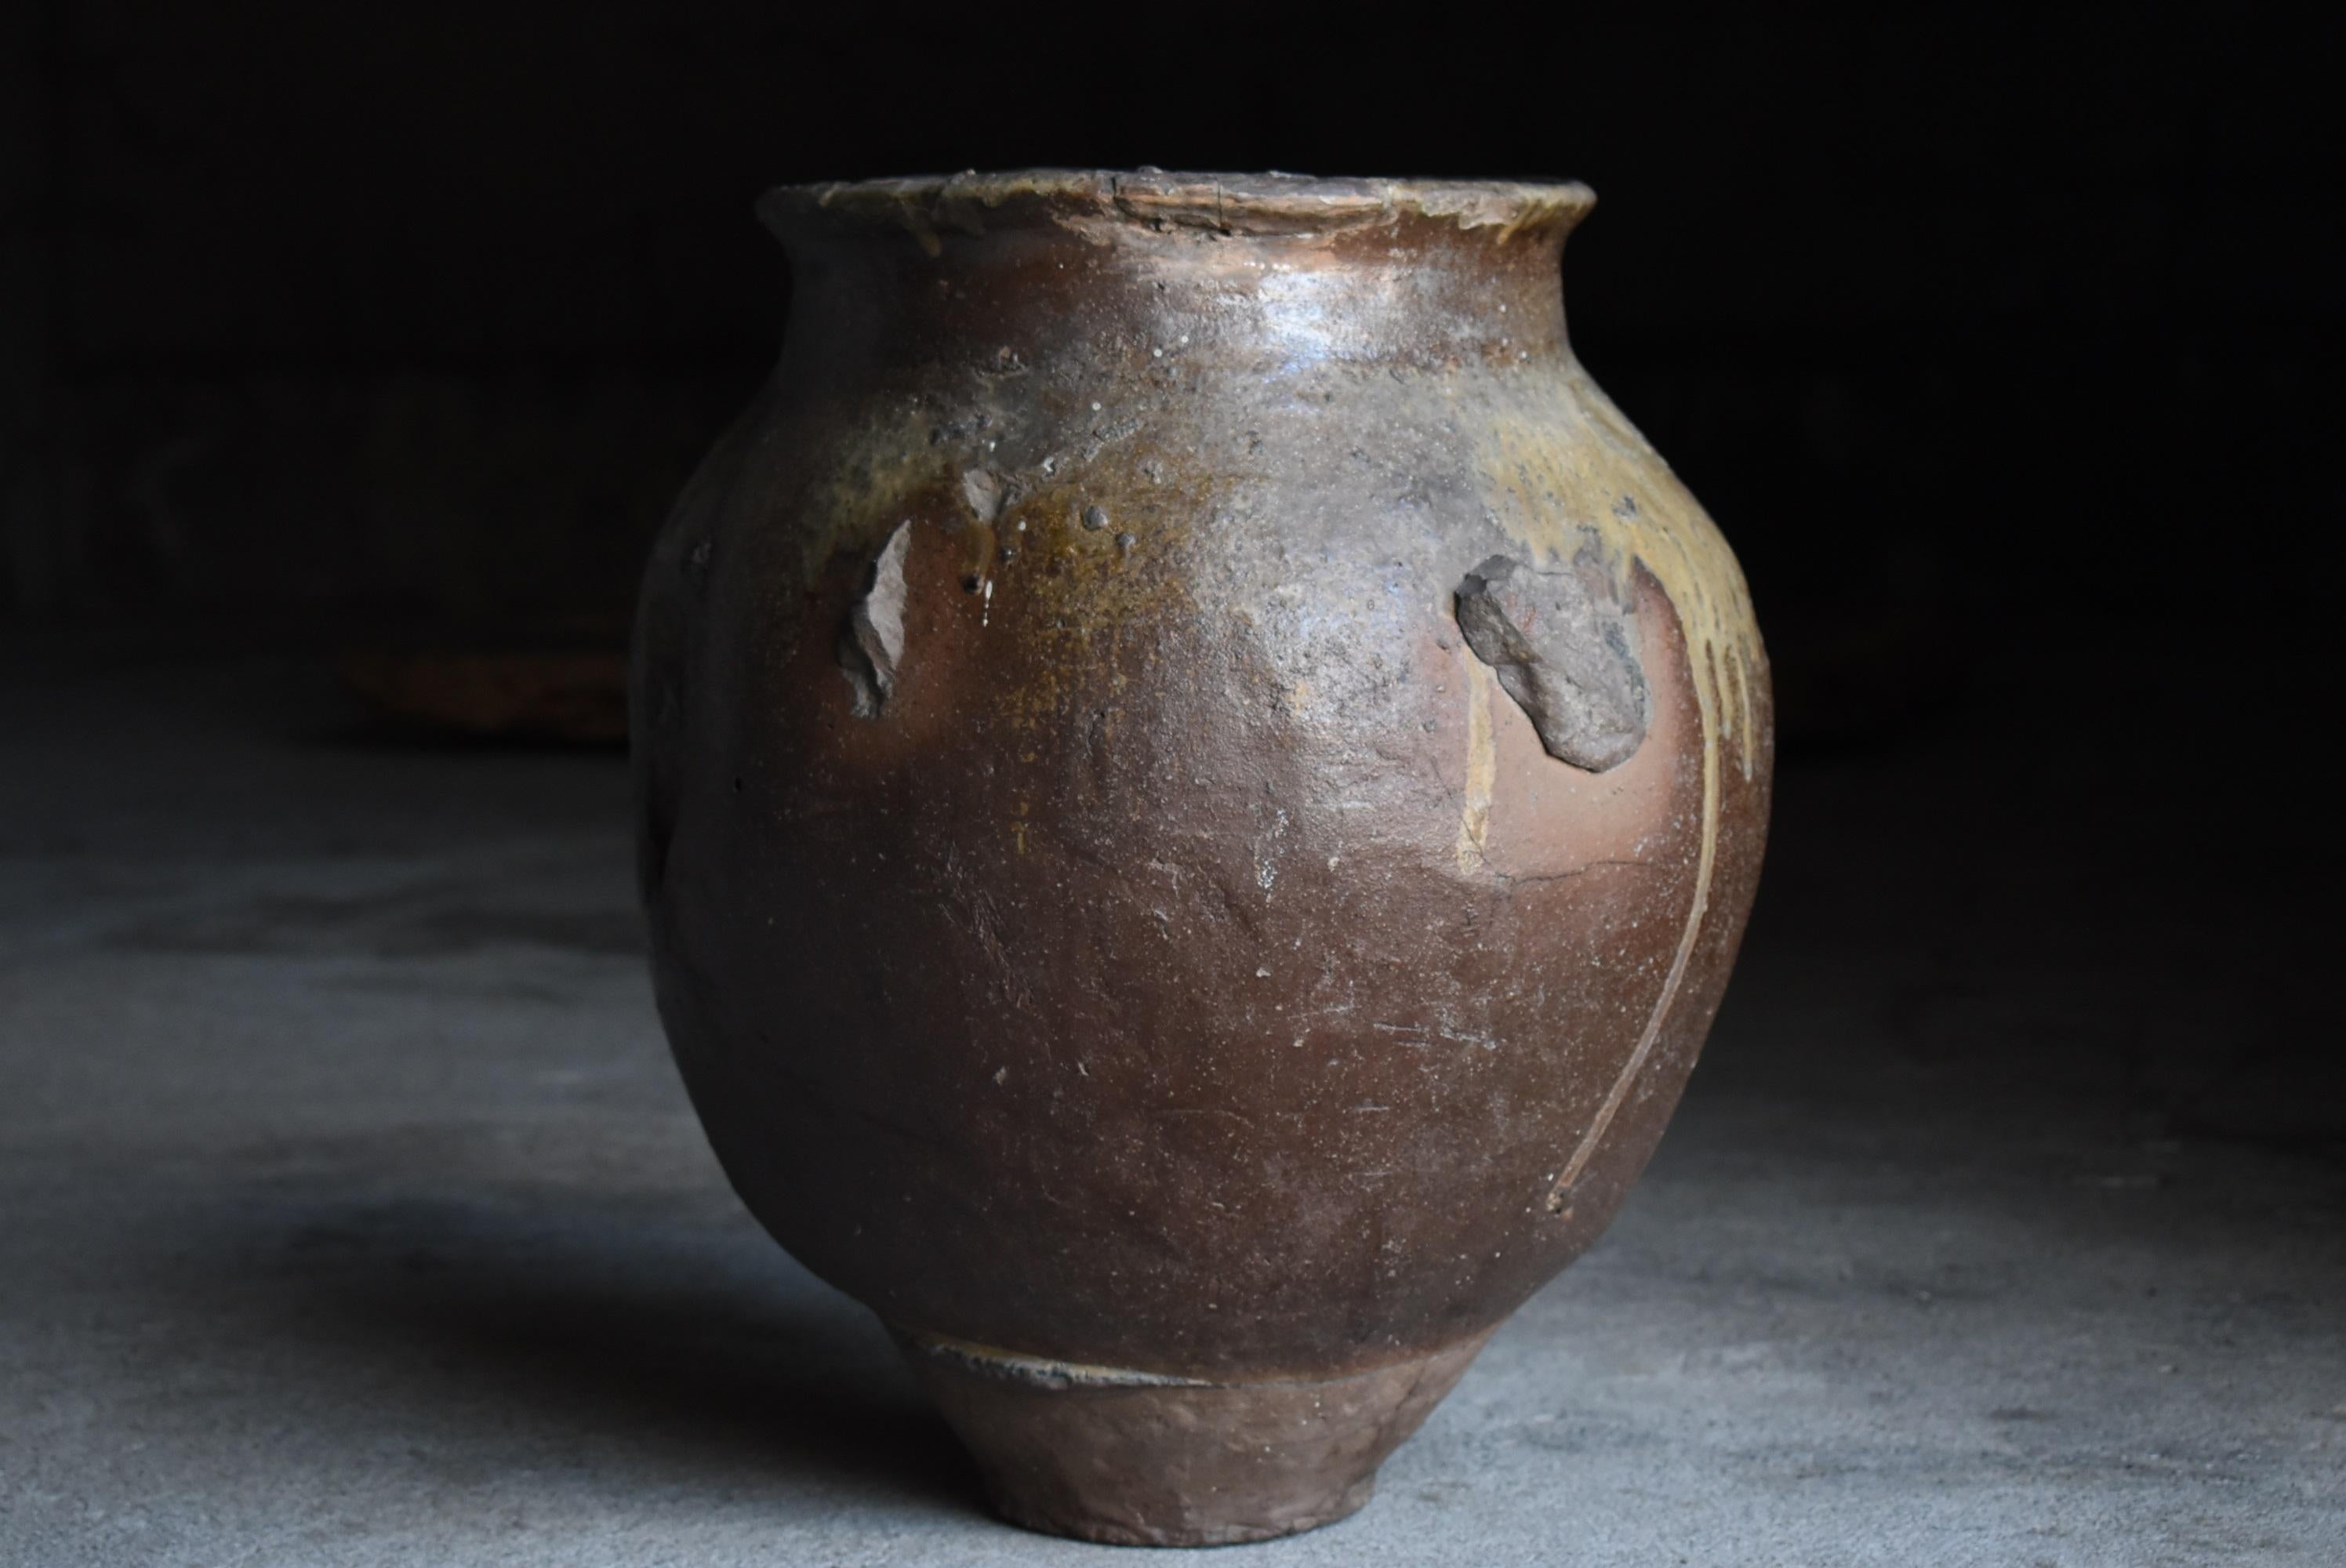 Japanese Antique Pottery 1700s-1800s/Flower Vase Vessel Jar Tsubo Wabisabi 2